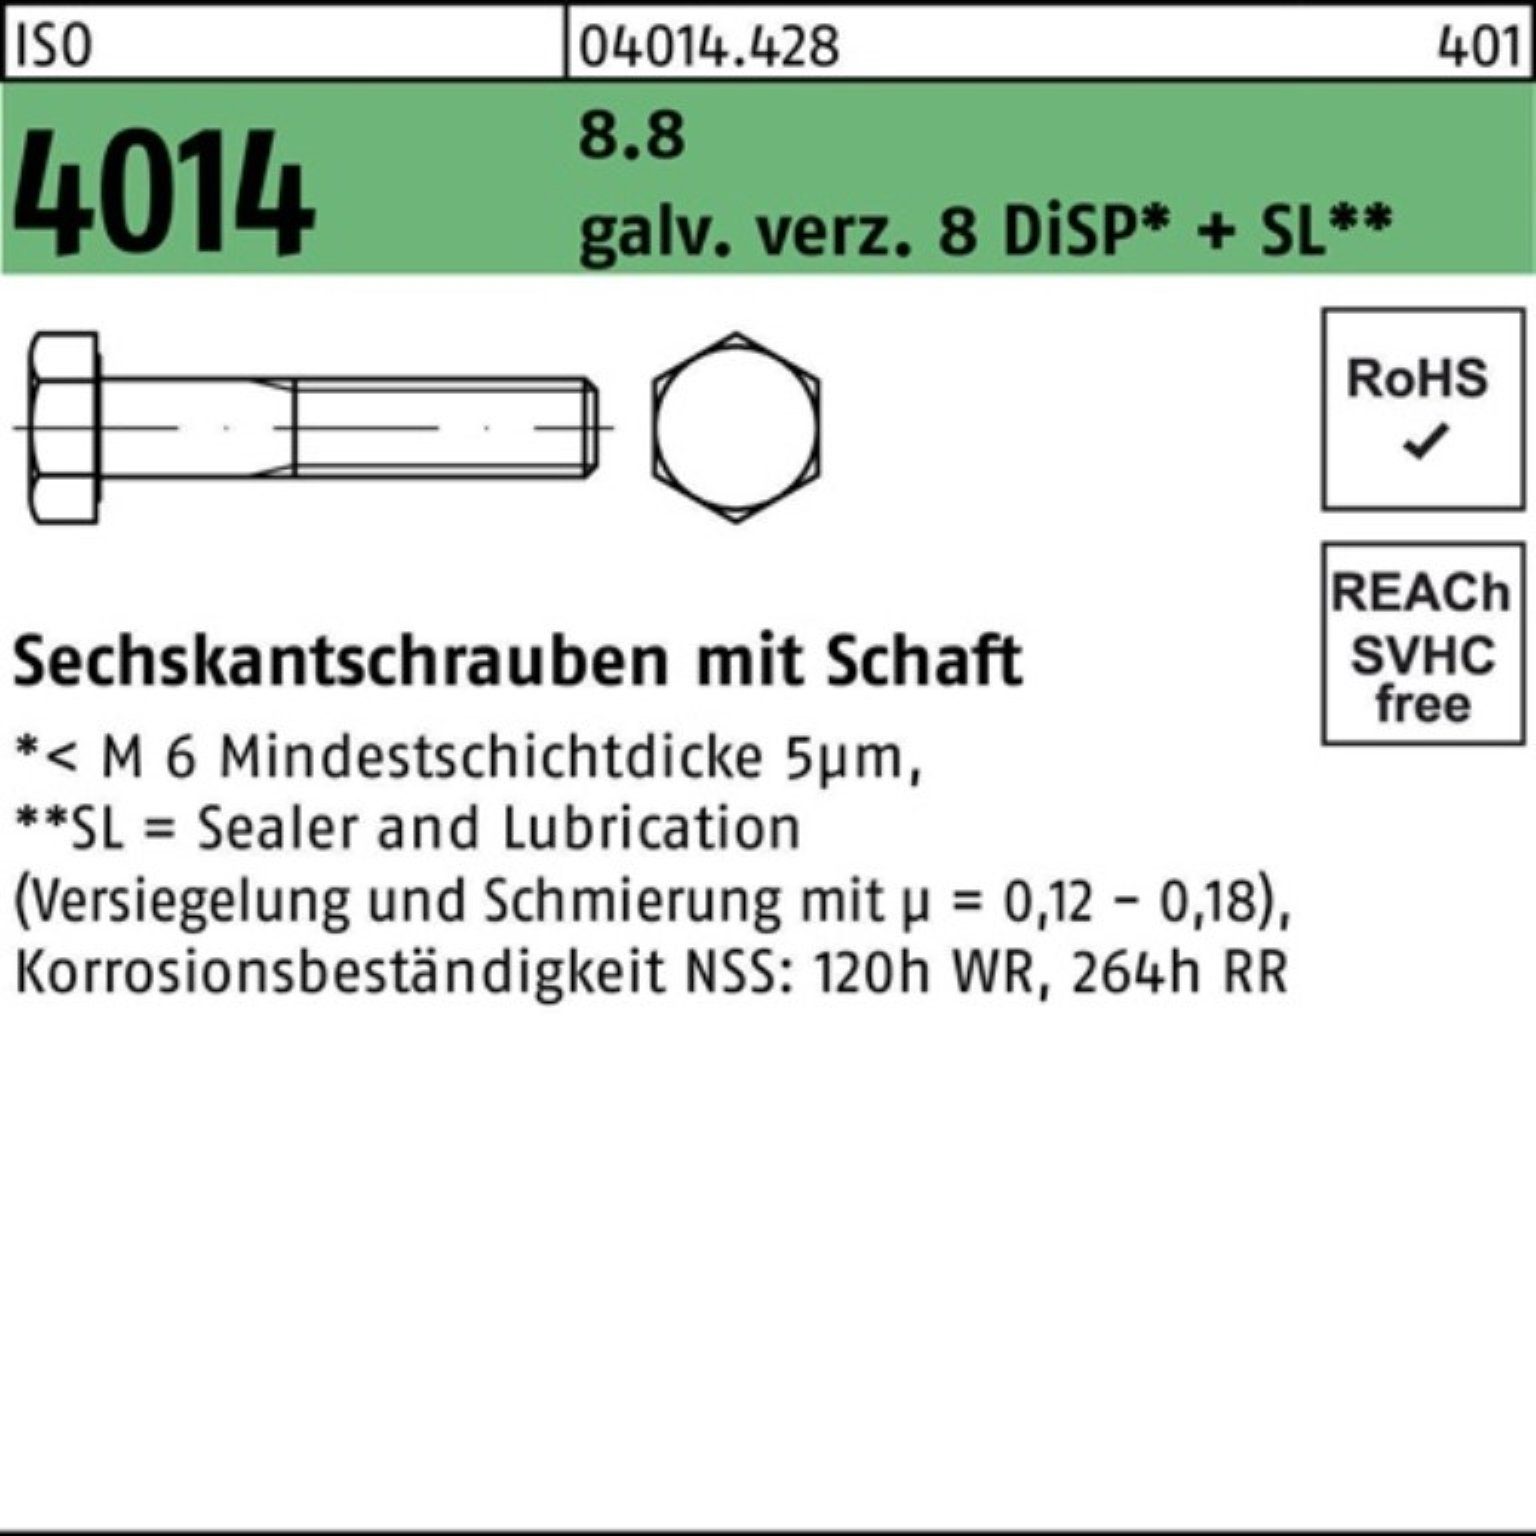 Bufab Sechskantschraube 100er Pack Sechskantschraube ISO 4014 Schaft M24x110 8.8 galv.verz. 8